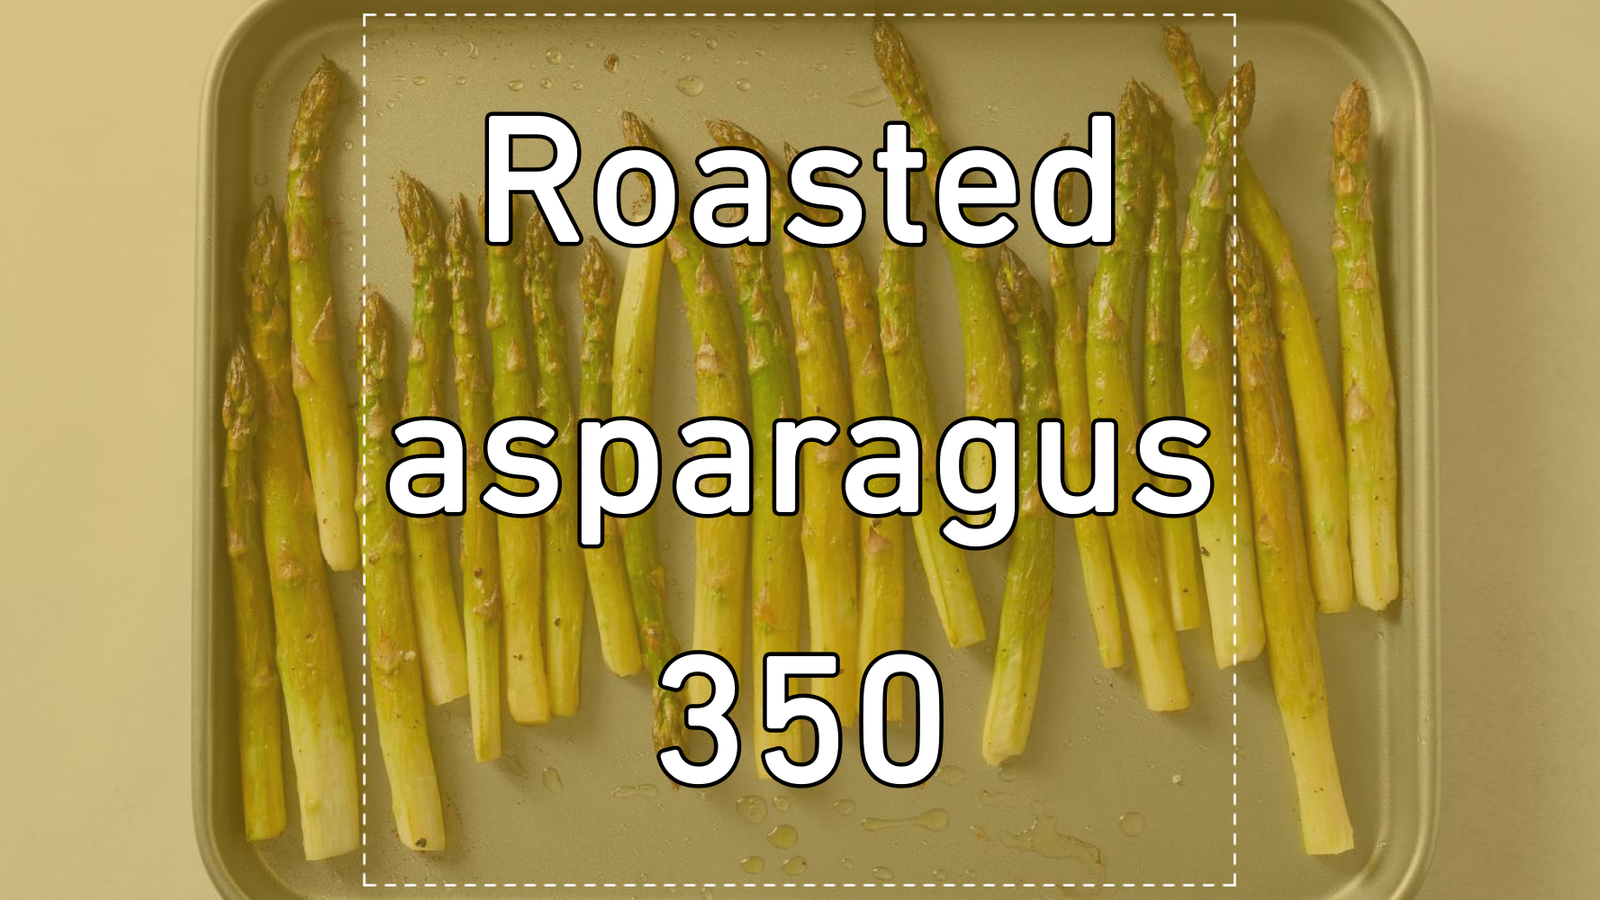 Roasted asparagus 350